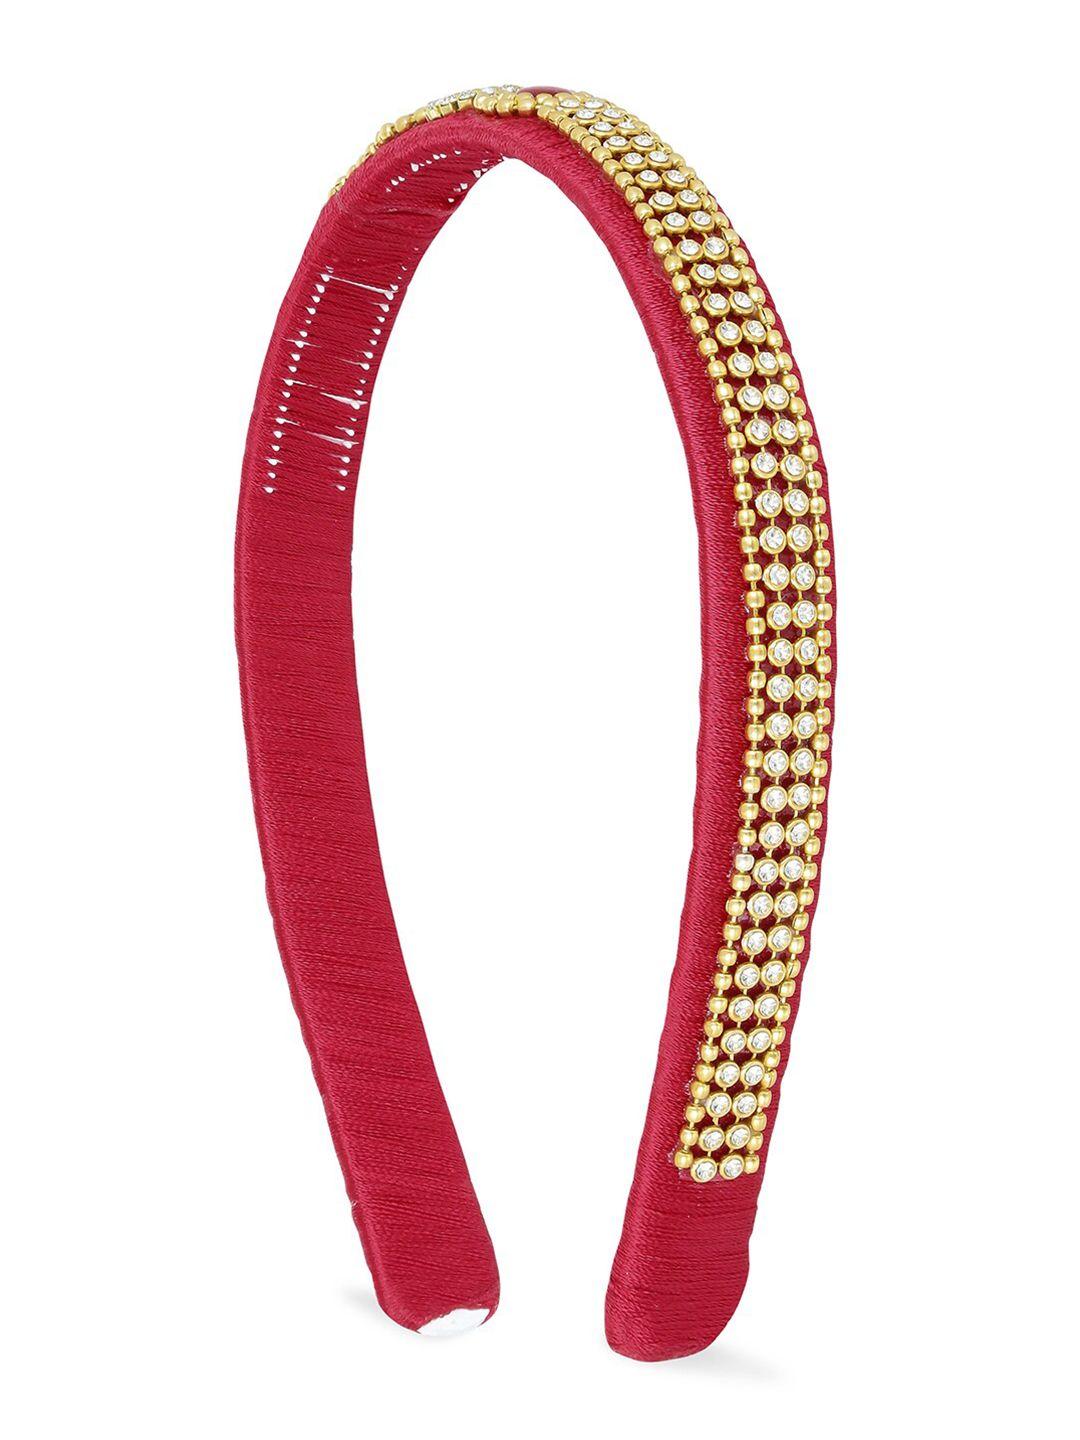 akshara girls red & gold-toned embellished hairband